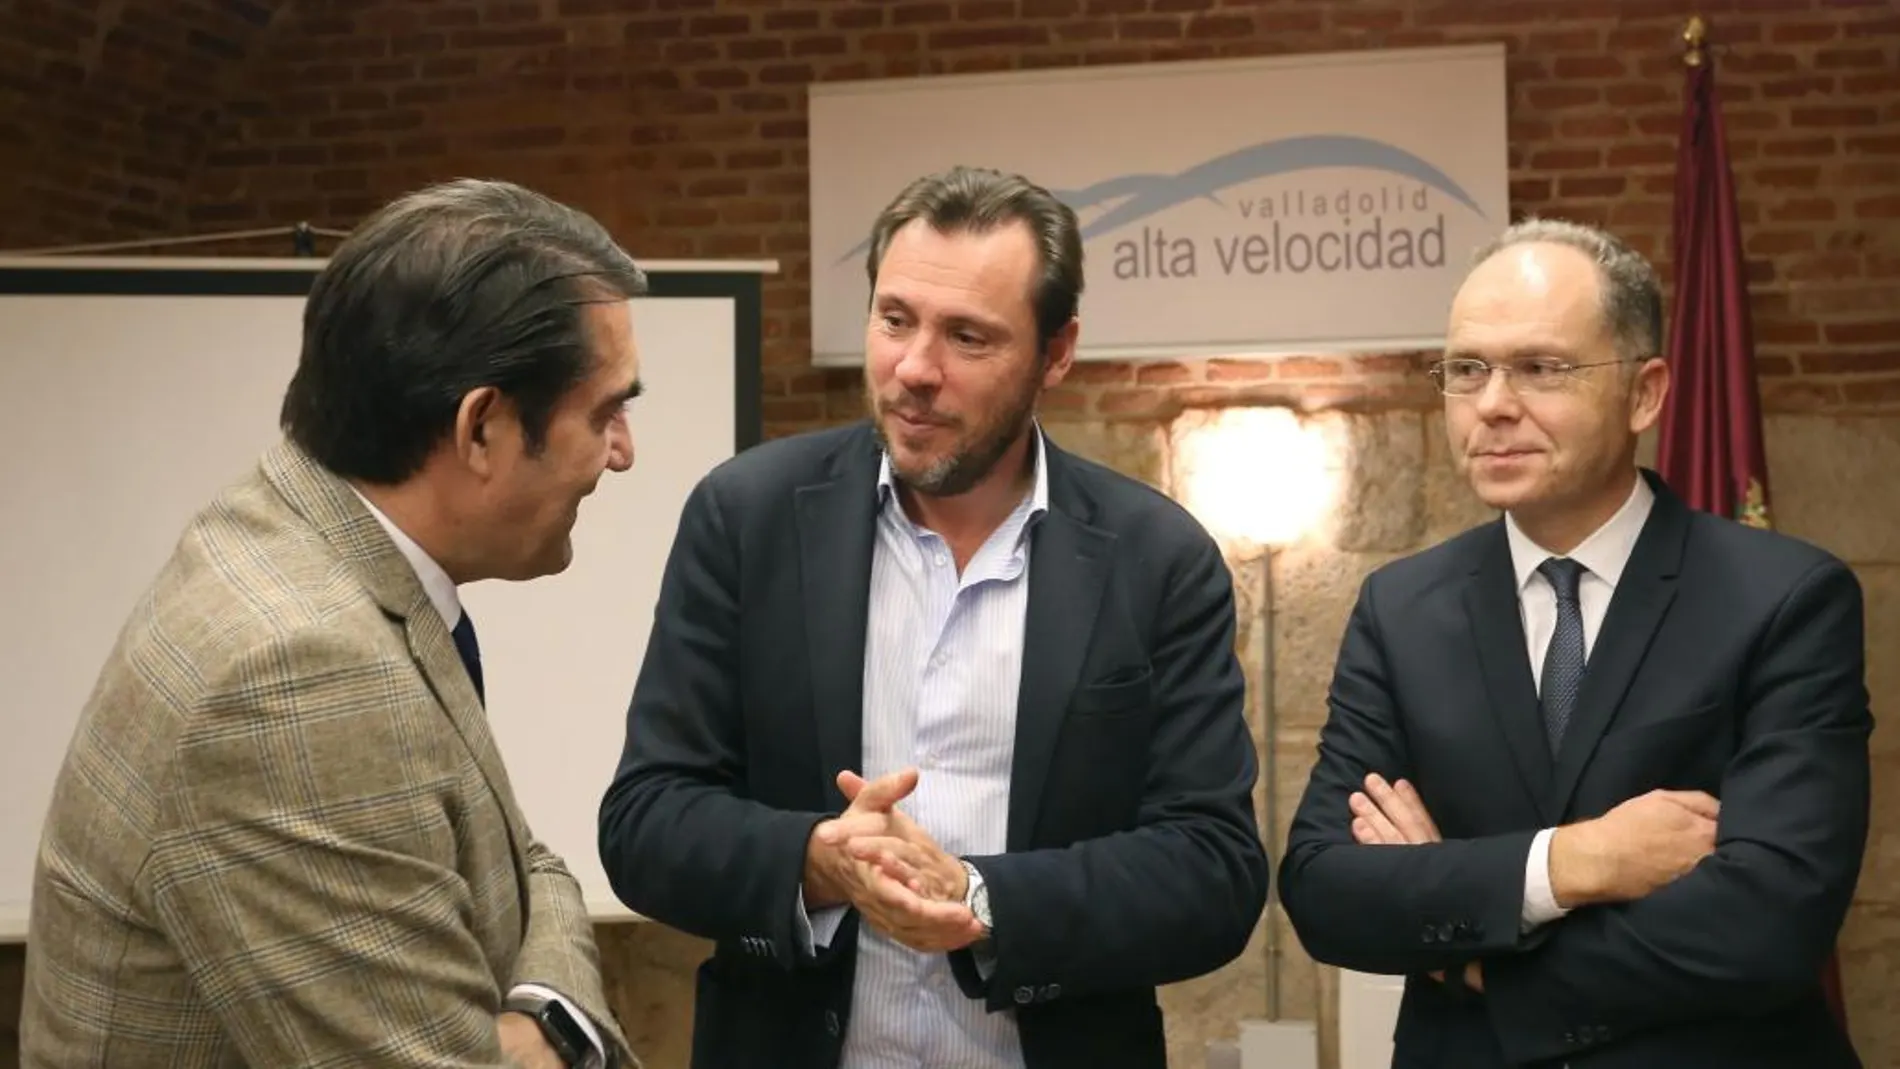 El consejero de Fomento, Juan Carlos Suárez-Quiñones; el alcalde, Óscar Puente, y el presidente de Adif, Juan Bravo, conversan antes de la reunión de la Sociedad Valladolid Alta Velocidad